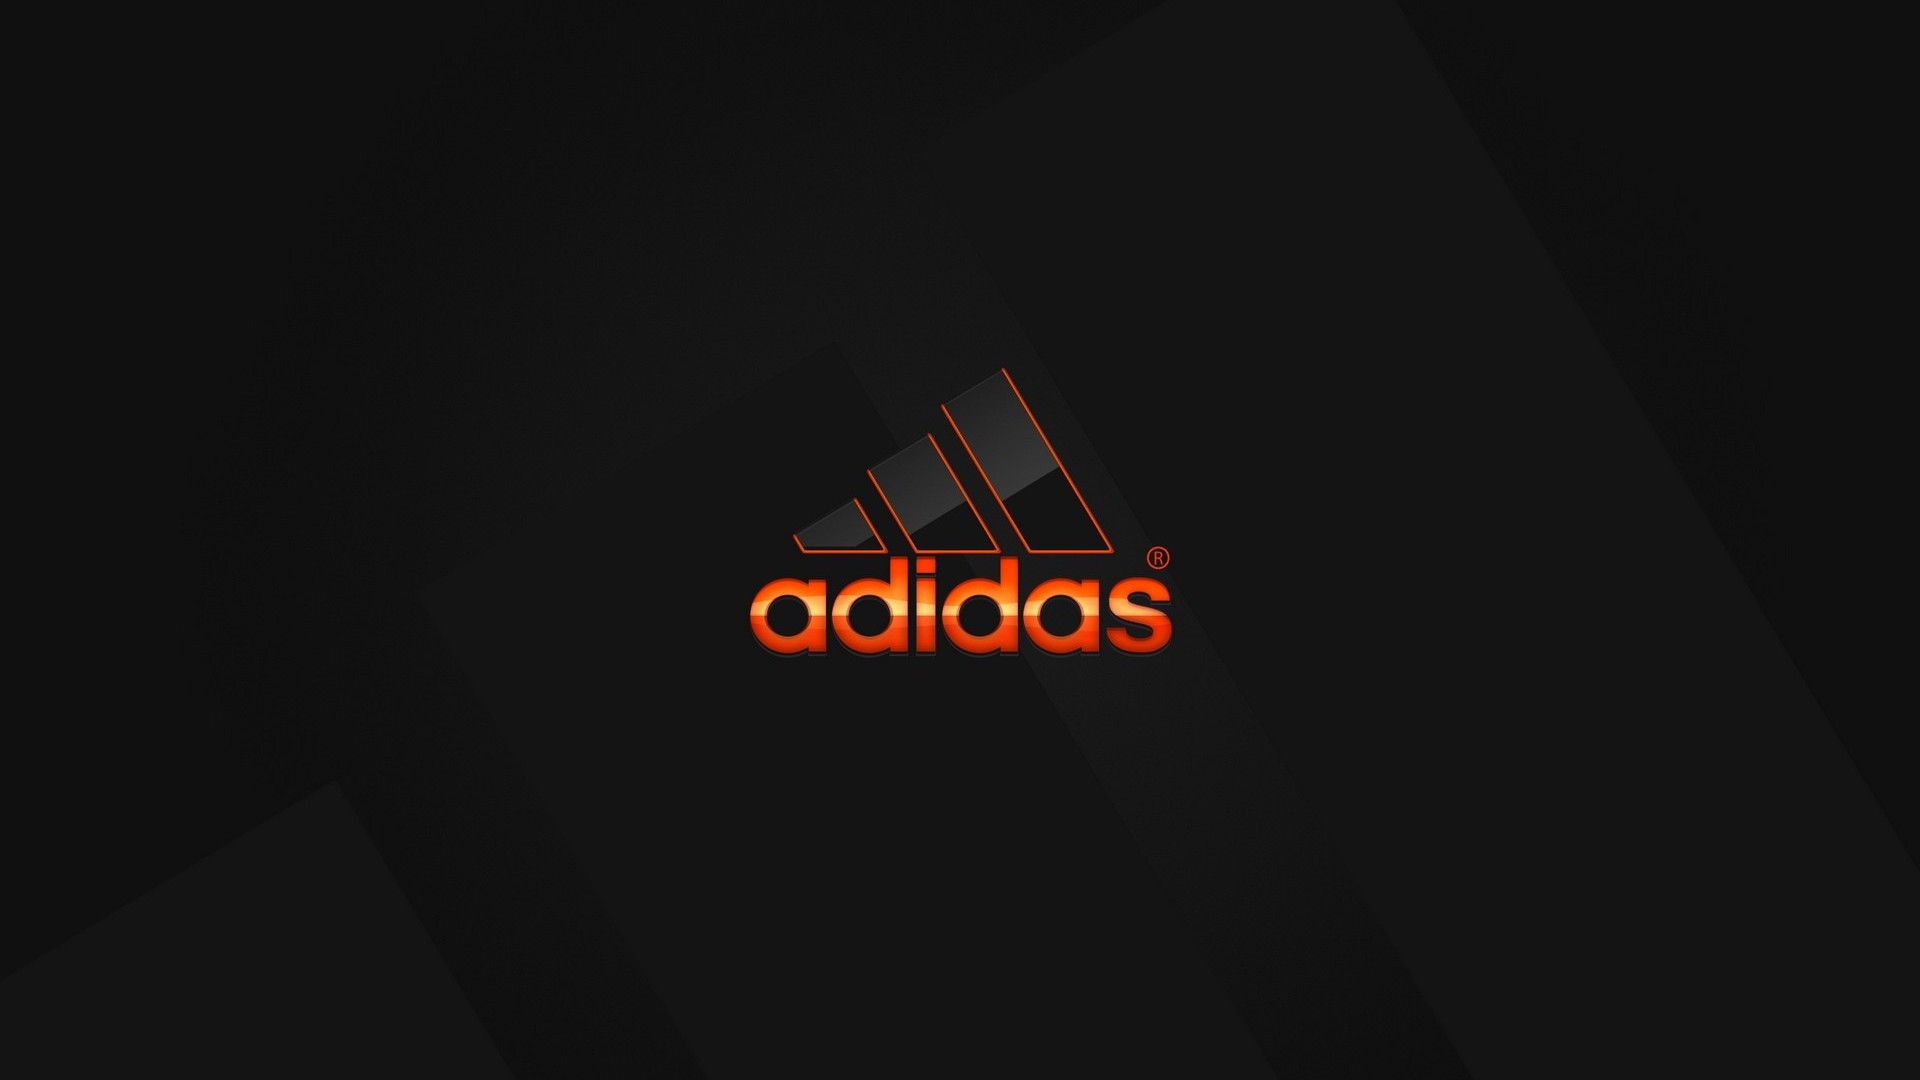 adidas, logo, orange, black background